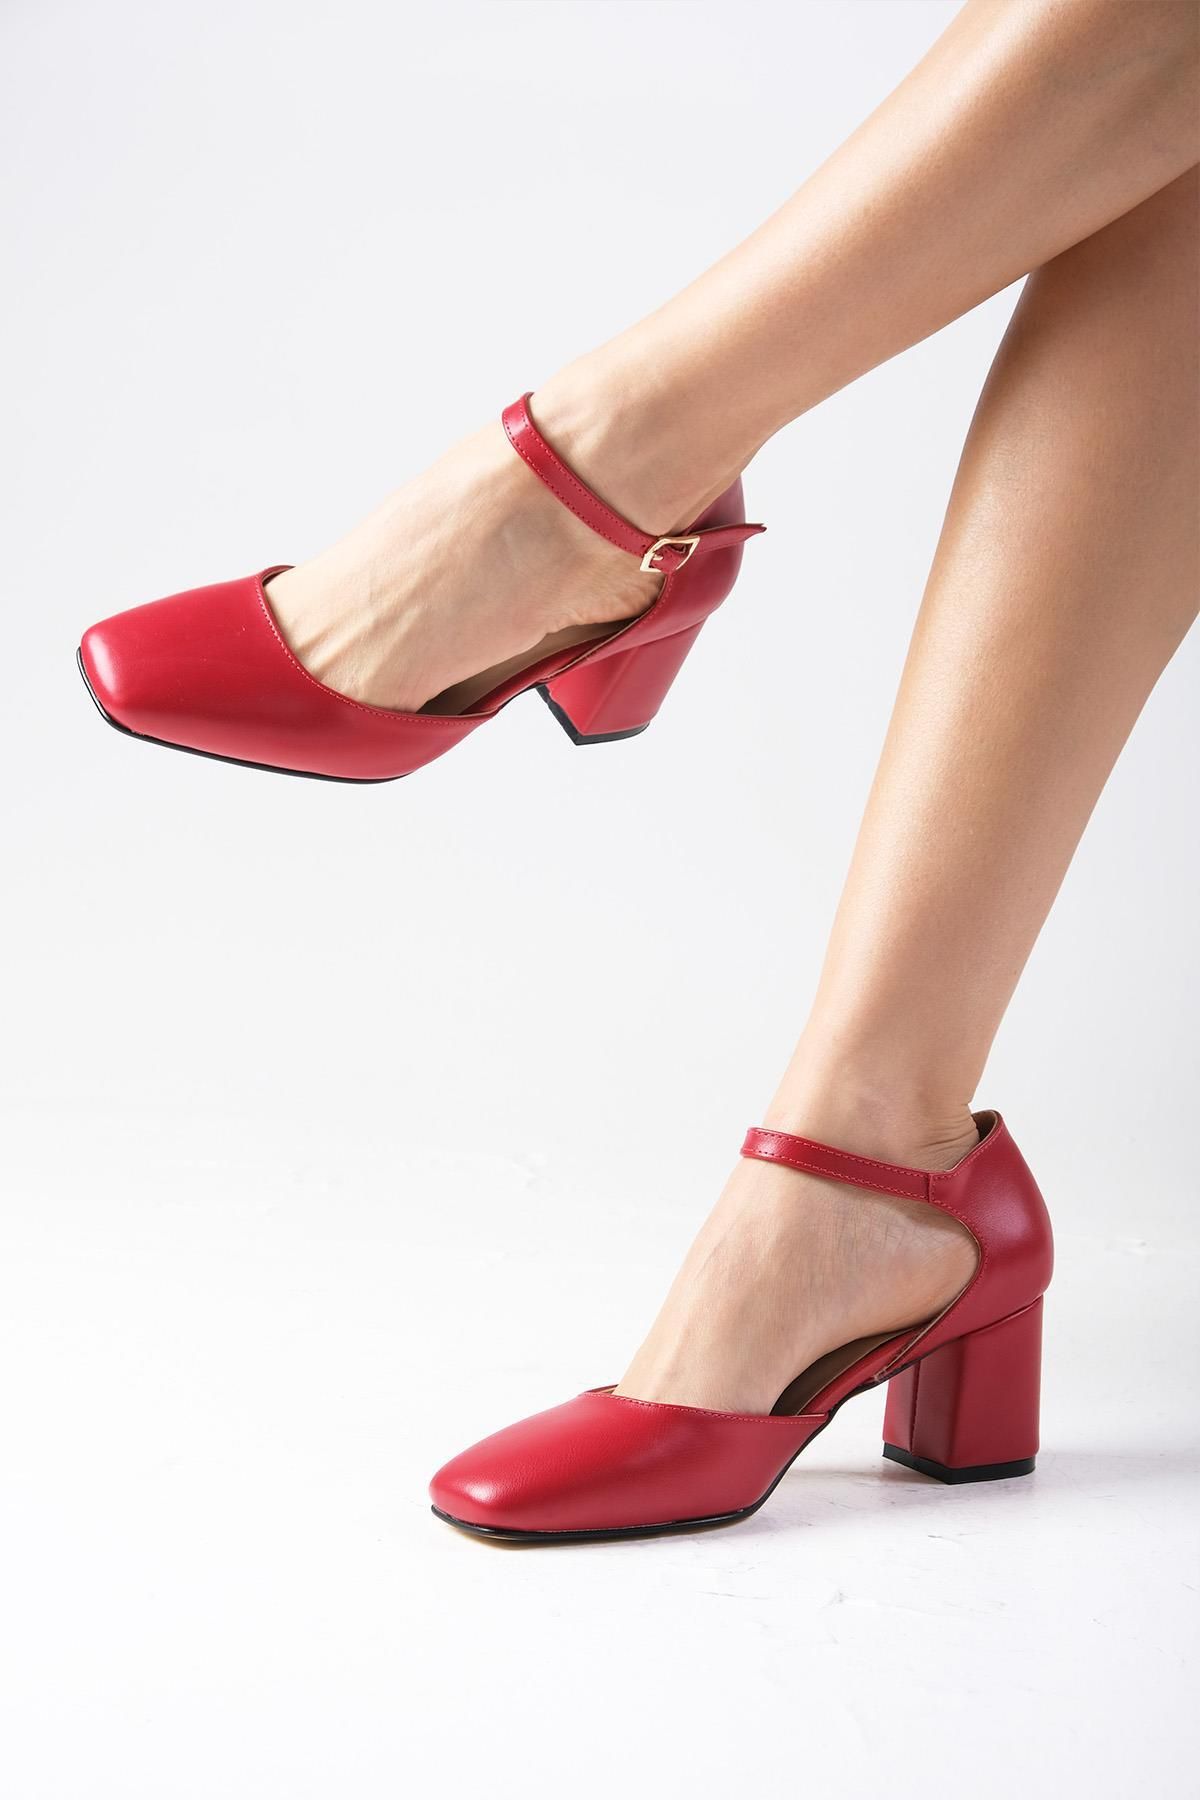 Mio Gusto Anna Kırmızı Renk Küt Burunlu Kalın Topuklu Bilek Bantlı Kadın Topuklu Ayakkabı